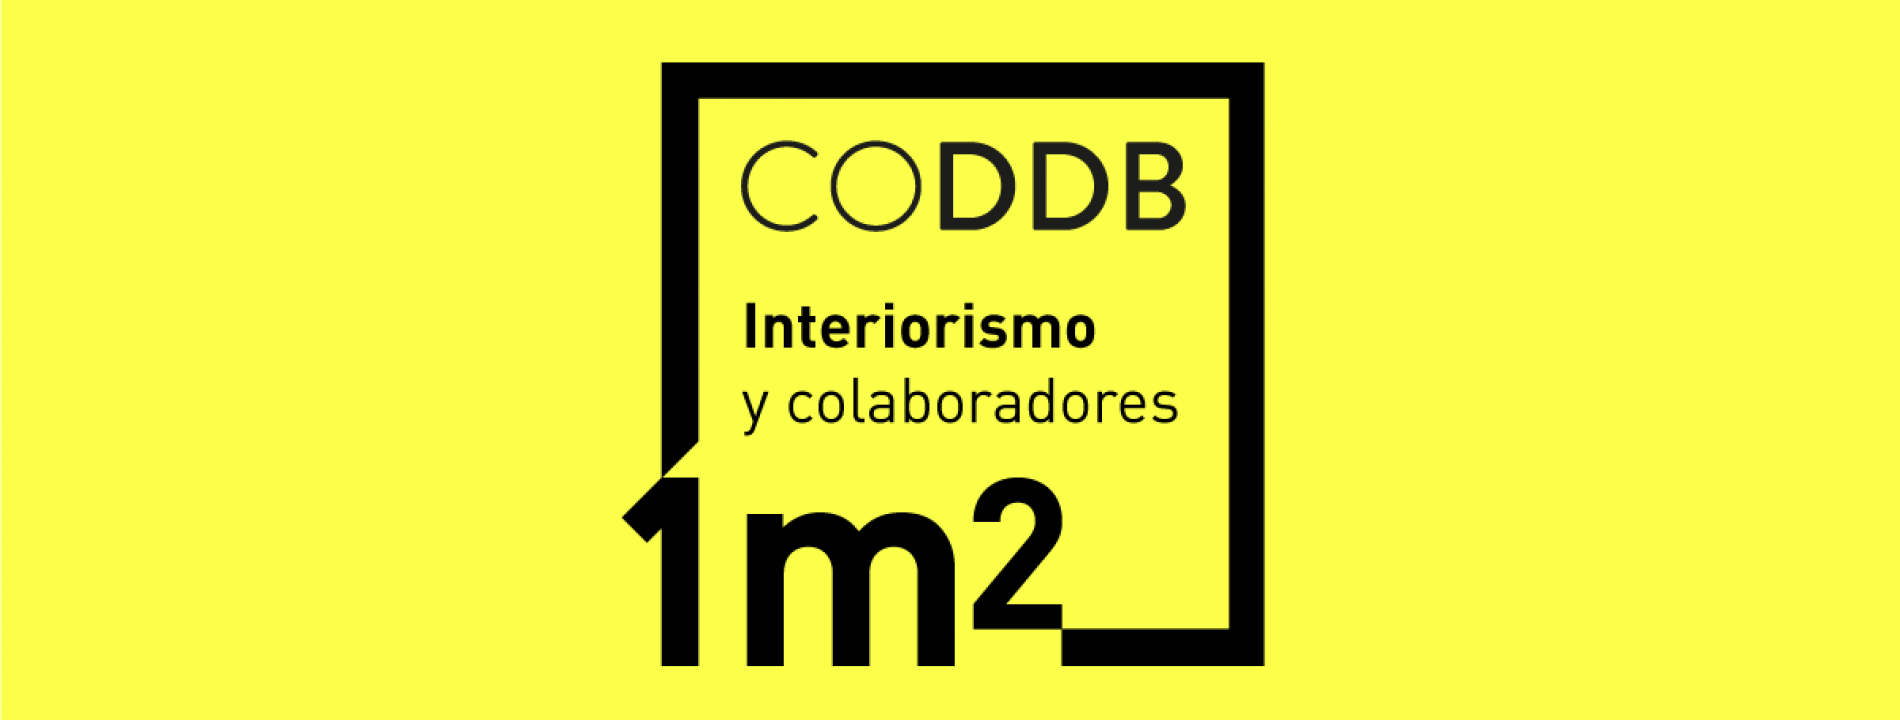 1m2 CODDB: Interiorismo y Colaboradores